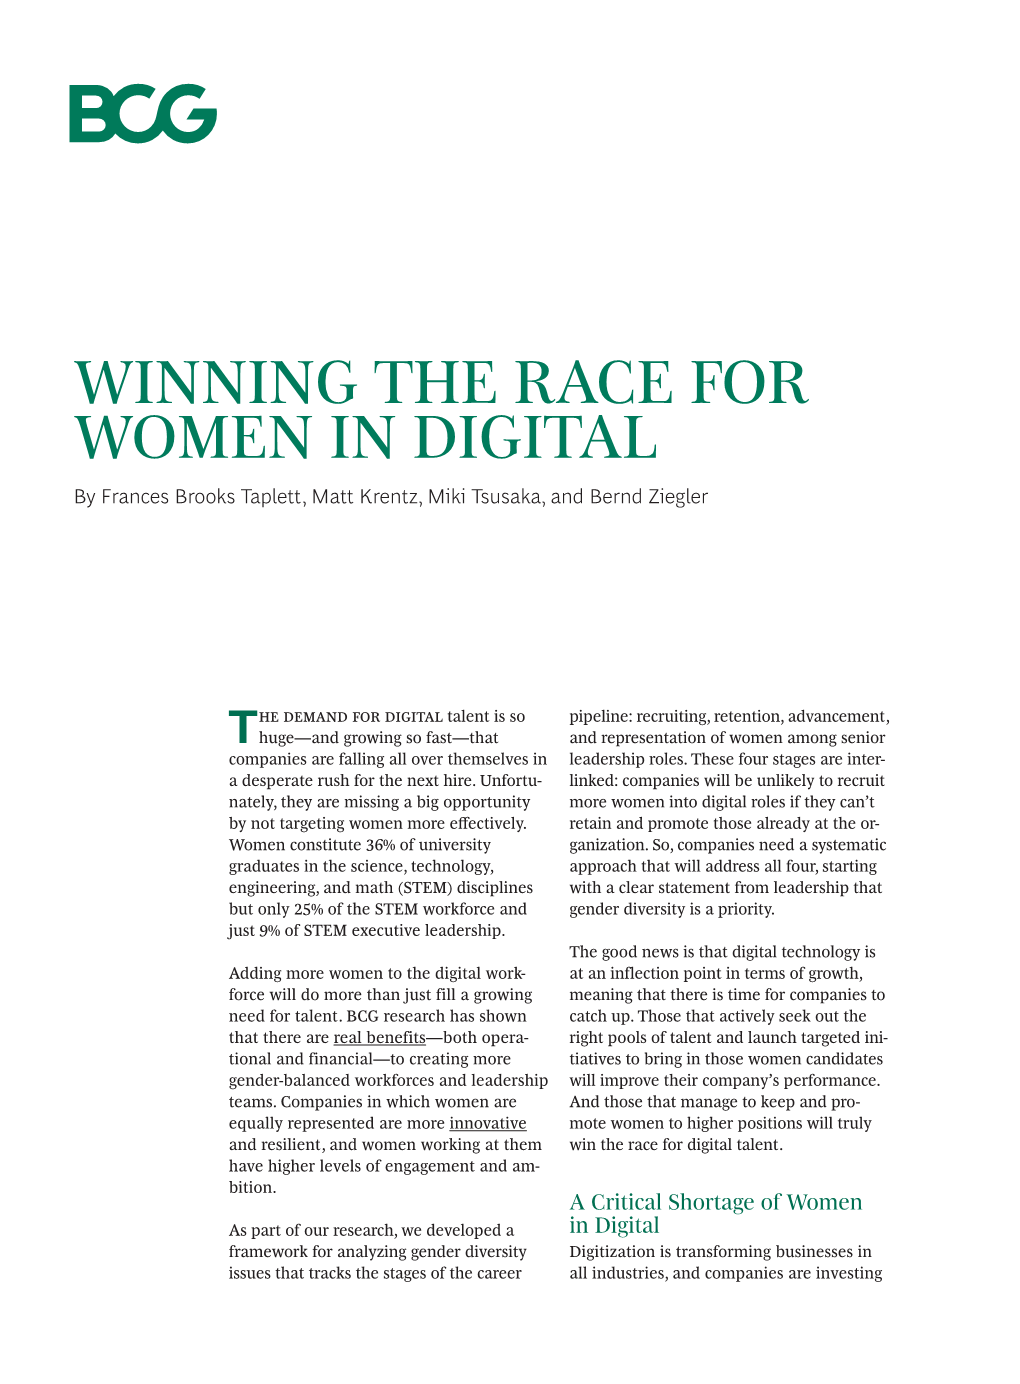 WINNING the RACE for WOMEN in DIGITAL by Frances Brooks Taplett, Matt Krentz, Miki Tsusaka, and Bernd Ziegler